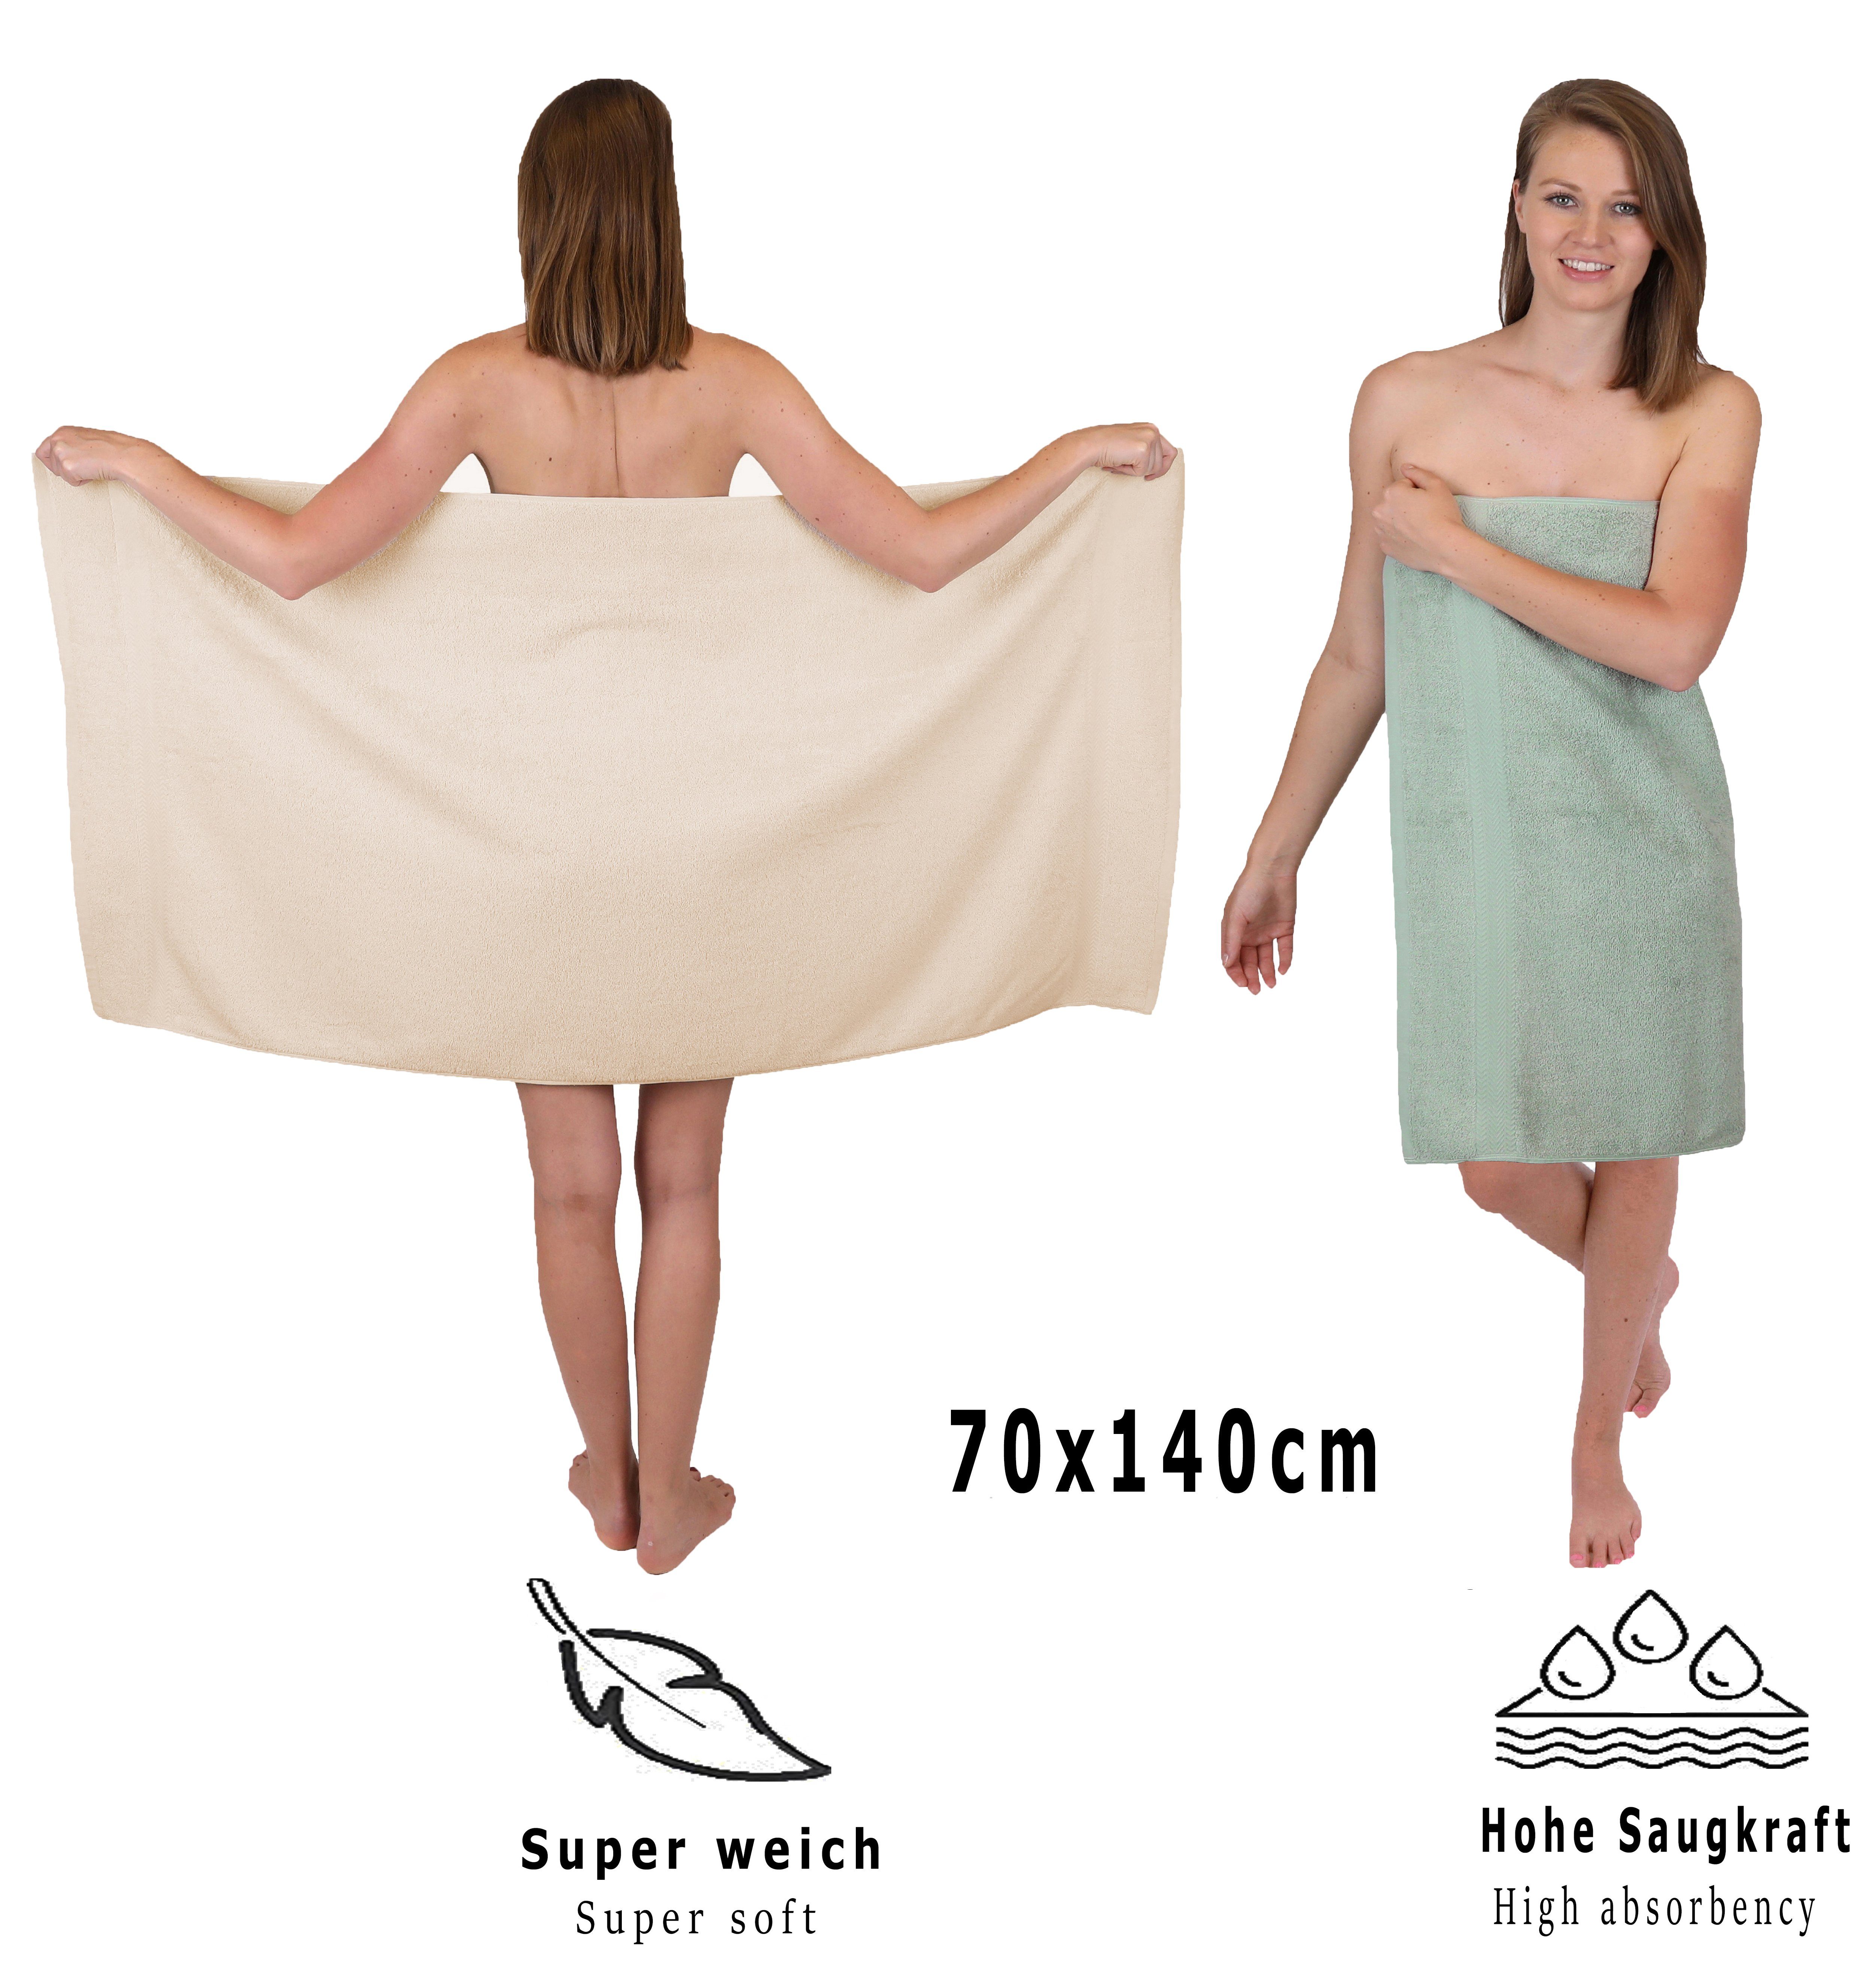 Betz Handtuch Set 12-tlg. Set Sand/heugrün, 100% (12-tlg) Baumwolle, Handtuch Premium Farbe